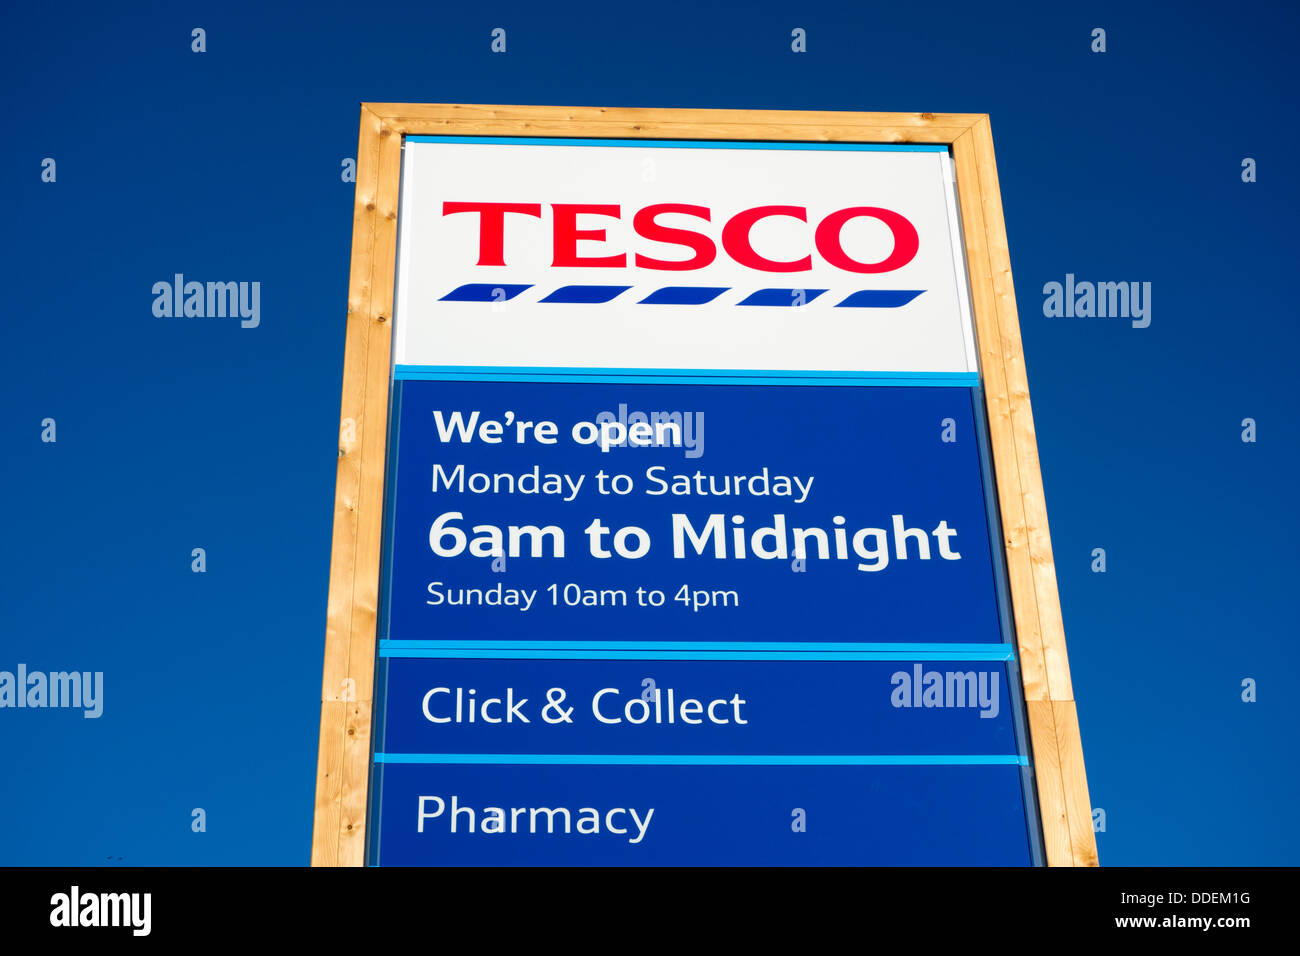 Tesco supermarket sign, England, UK Stock Photo